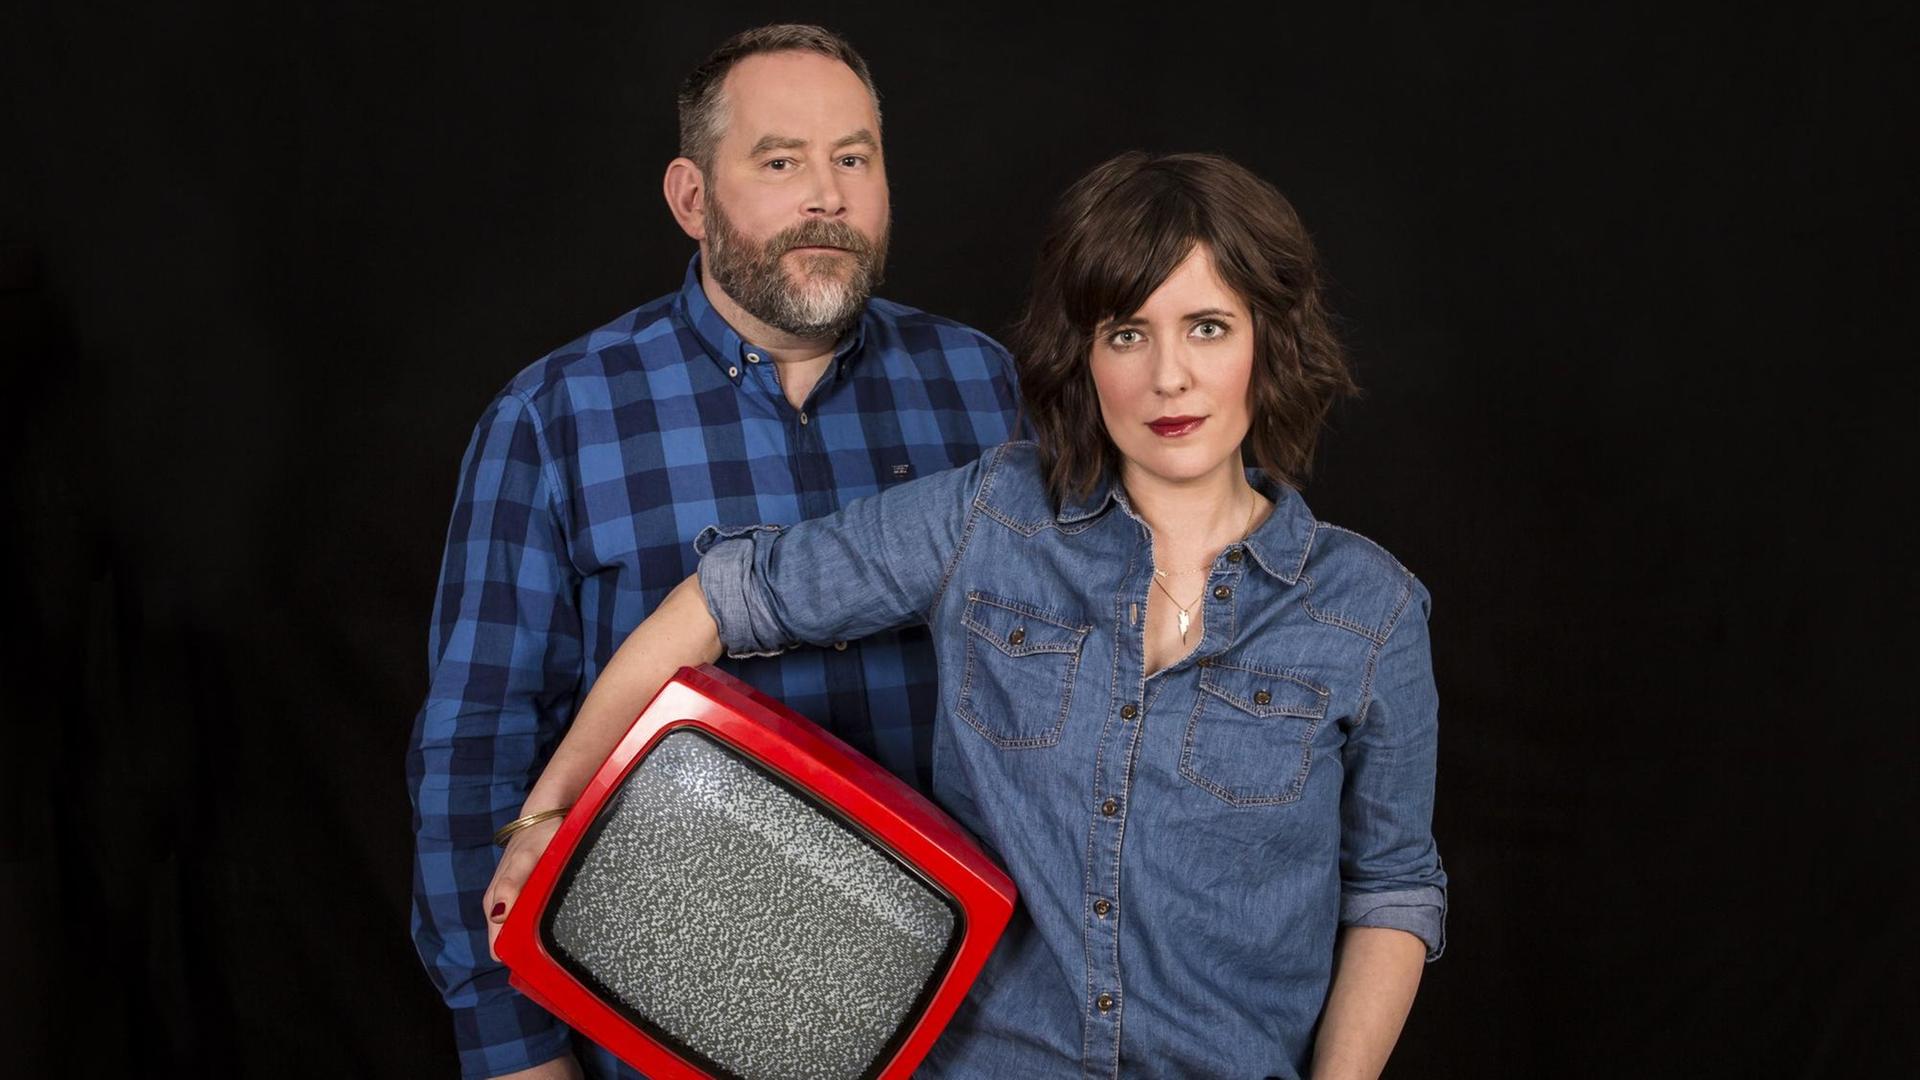 Sarah Kuttner und Stefan Niggemeier starten ihren neuen Podcast "Das kleine Fernsehballett" auf der Streamingplattform Deezer.